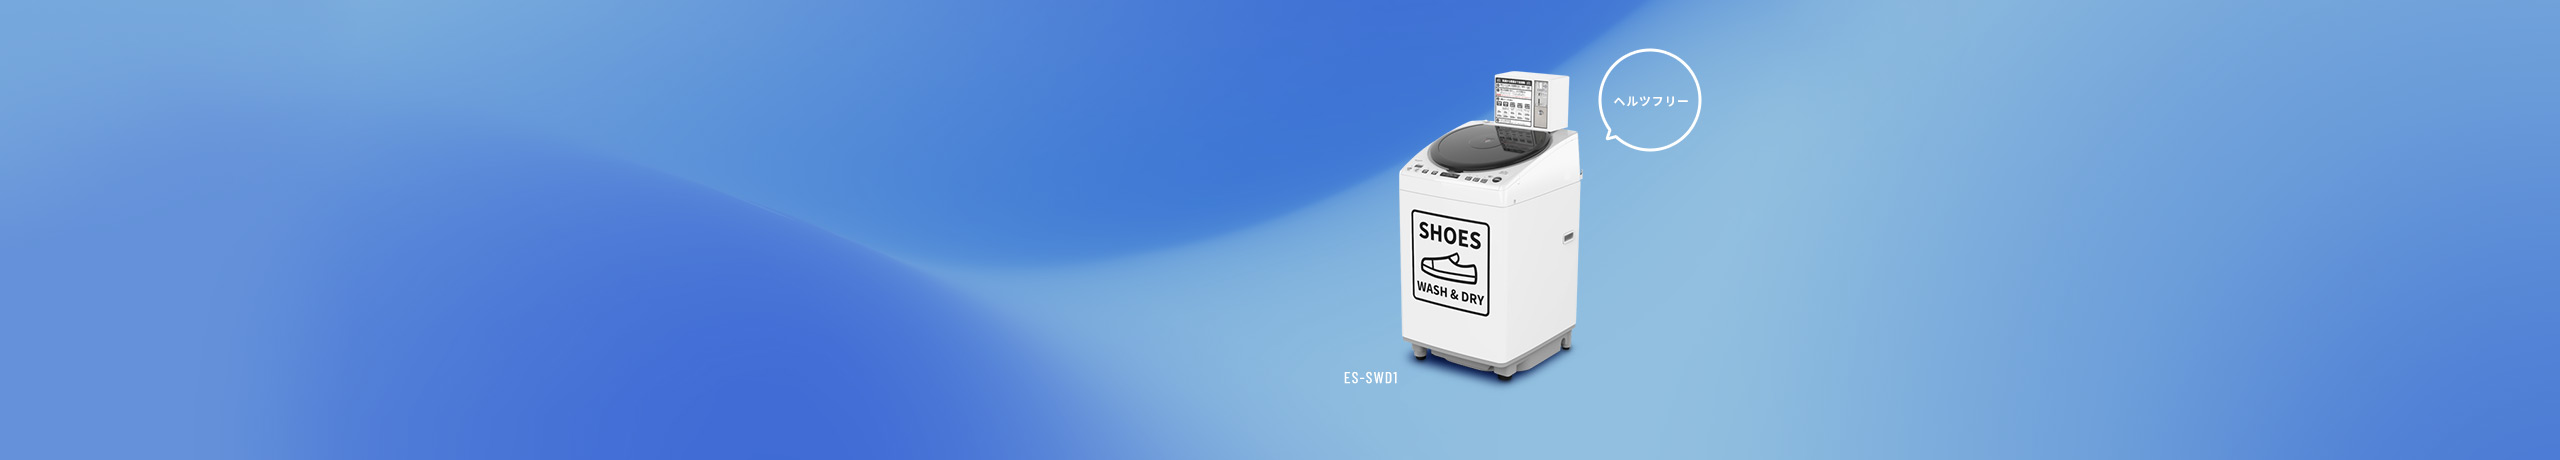 コインランドリーの靴・スニーカーの業務用洗濯乾燥靴ES-SWD1